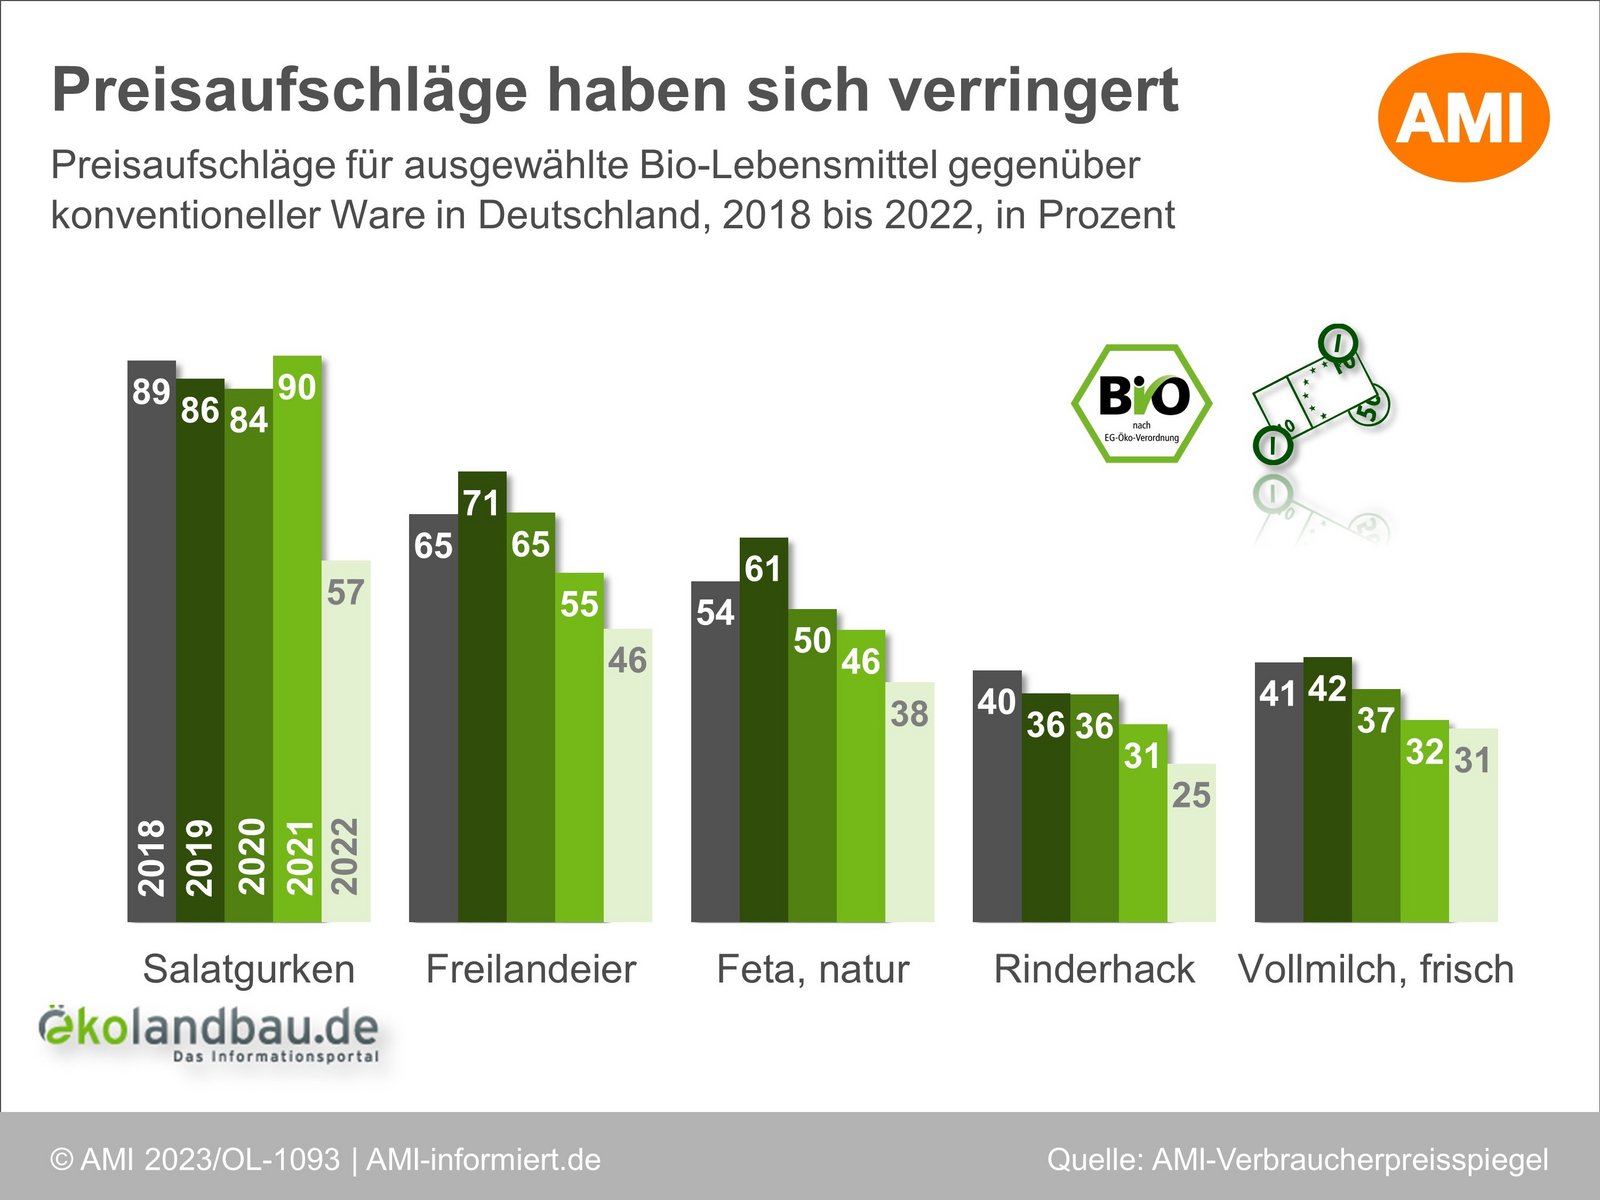 Preisaufschläge für ausgewählte Bio-Lebensmittel gegenüber konventioneller Ware in Deutschland im Jahr, Zeitreihe 2018 bis 2022. Klick öffnet Bild in Lightbox, ESC zum schließen drücken. 